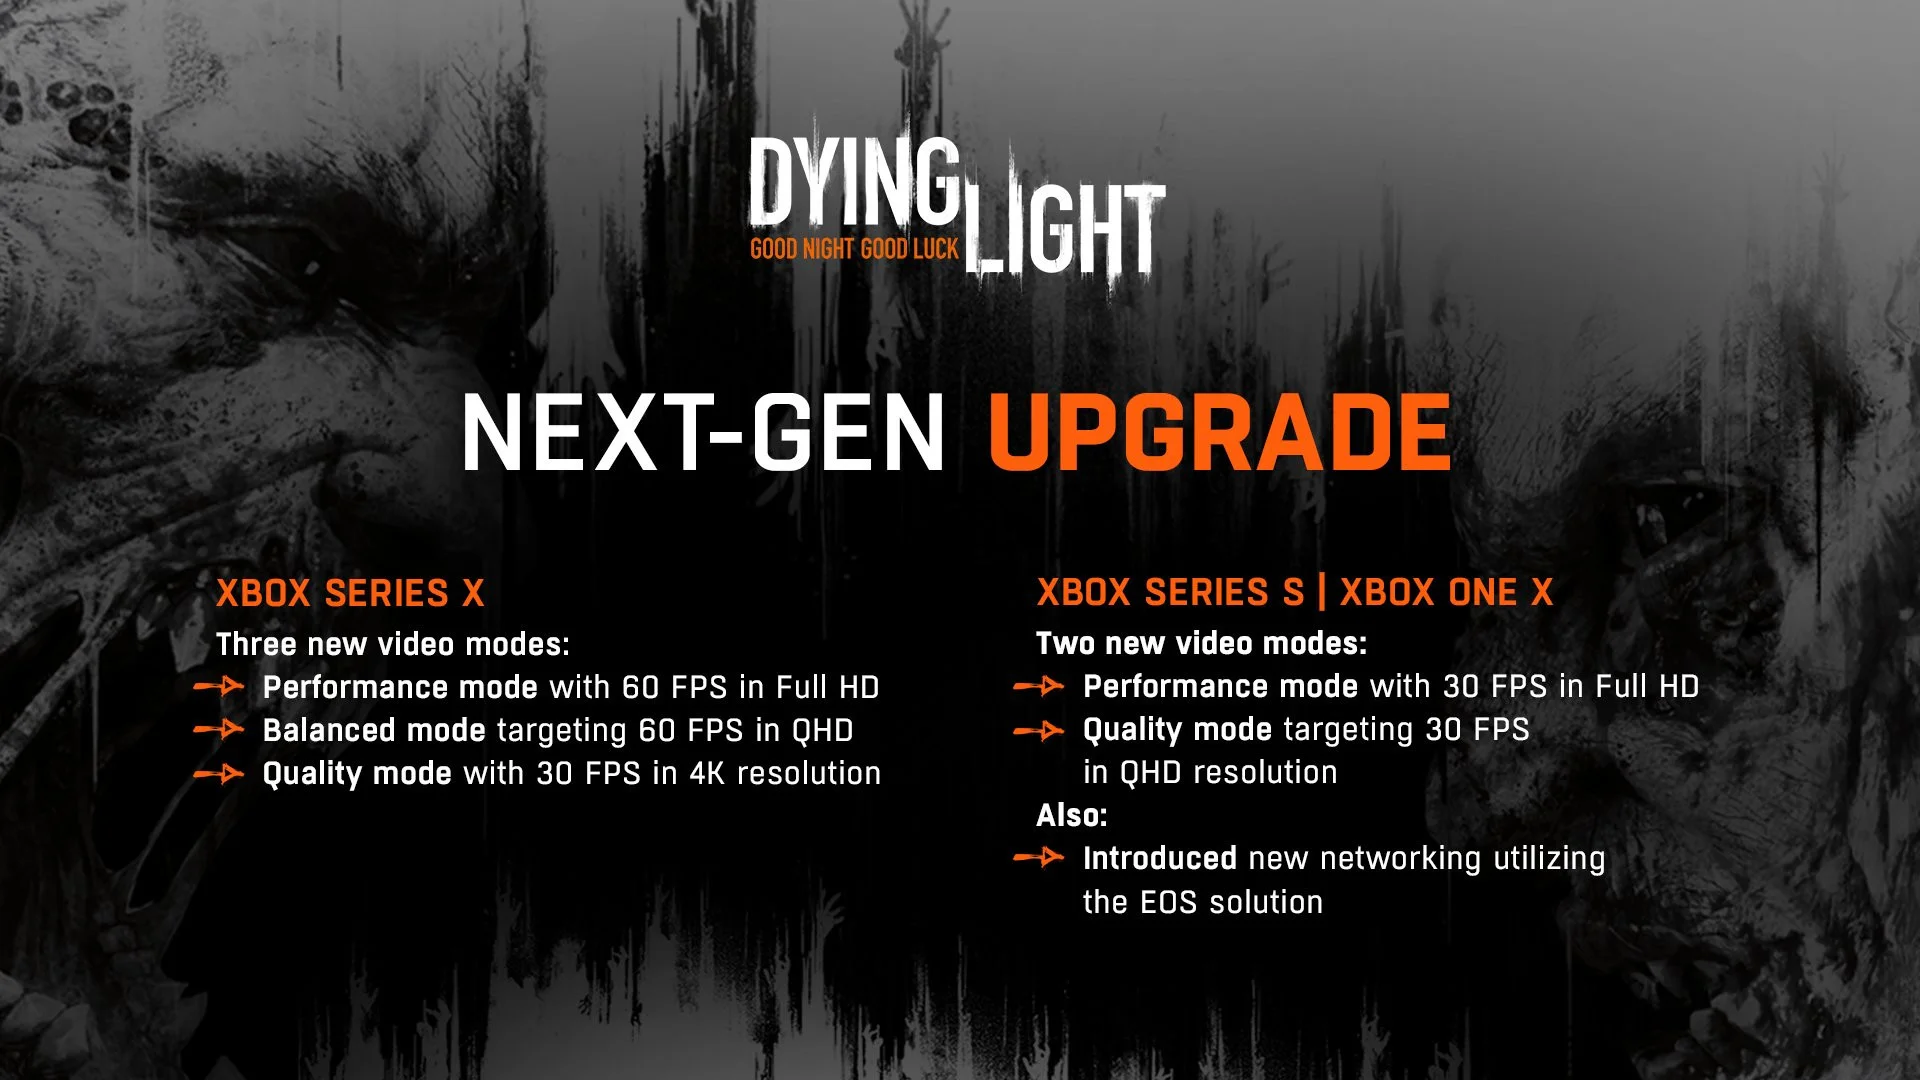 Первая Dying Light получила некстген-обновление для Xbox Series - фото 1